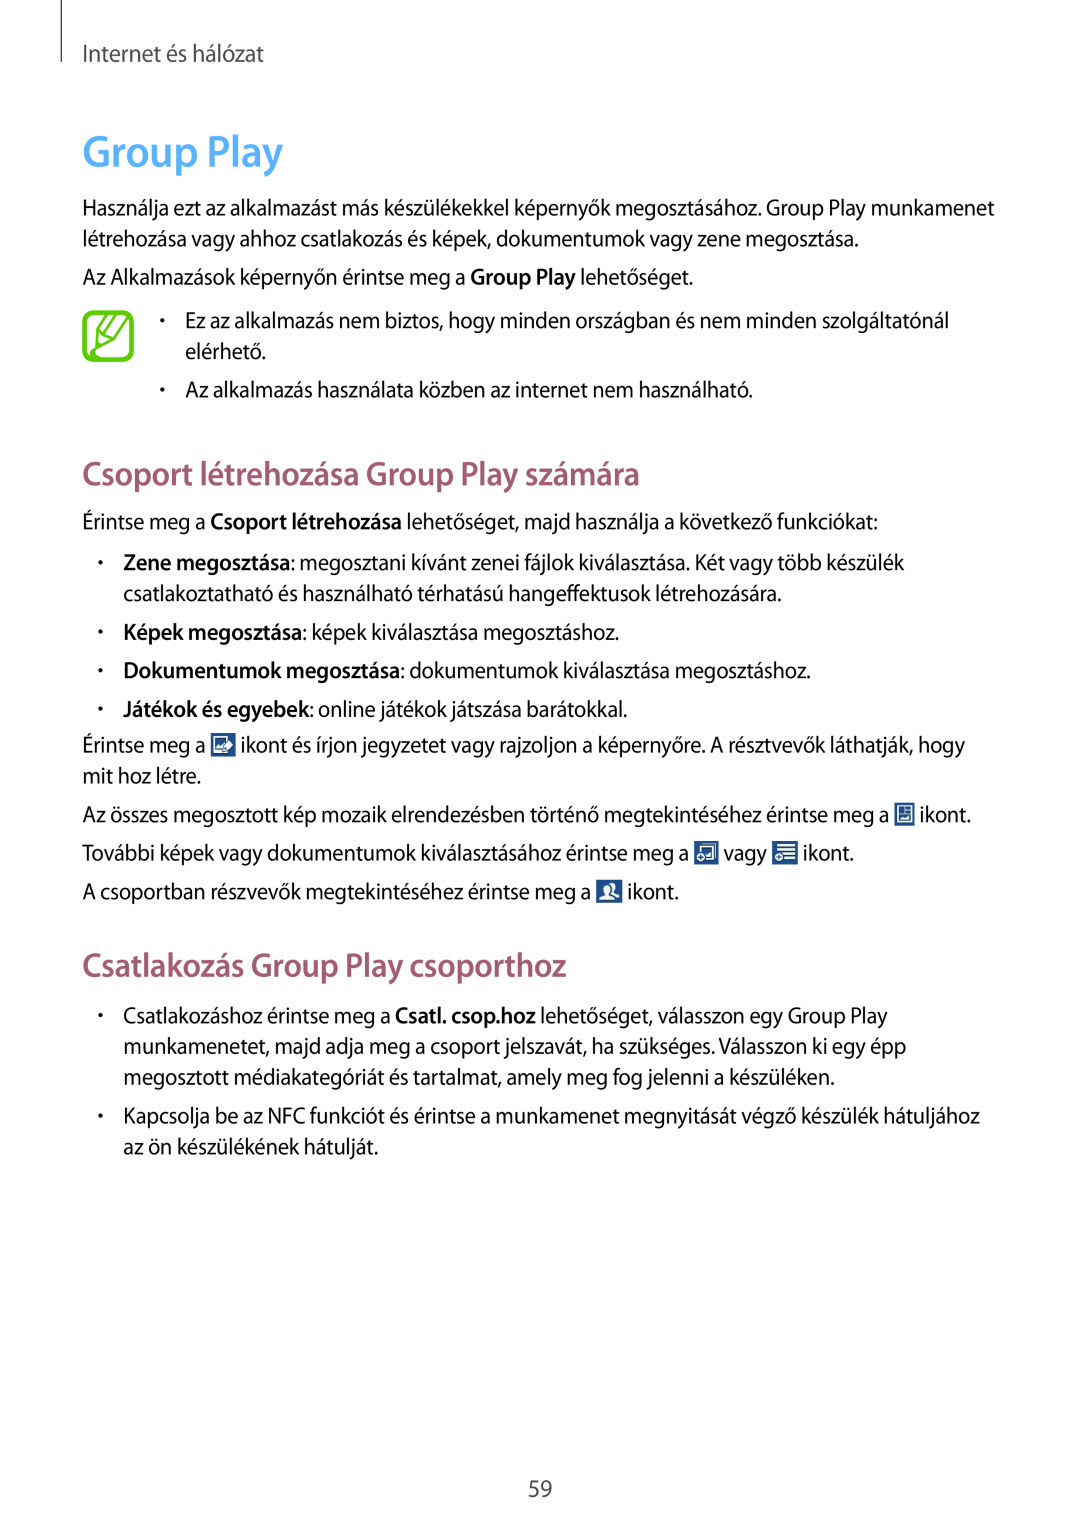 Samsung SM-G3815RWAAUT Csoport létrehozása Group Play számára, Csatlakozás Group Play csoporthoz, Internet és hálózat 